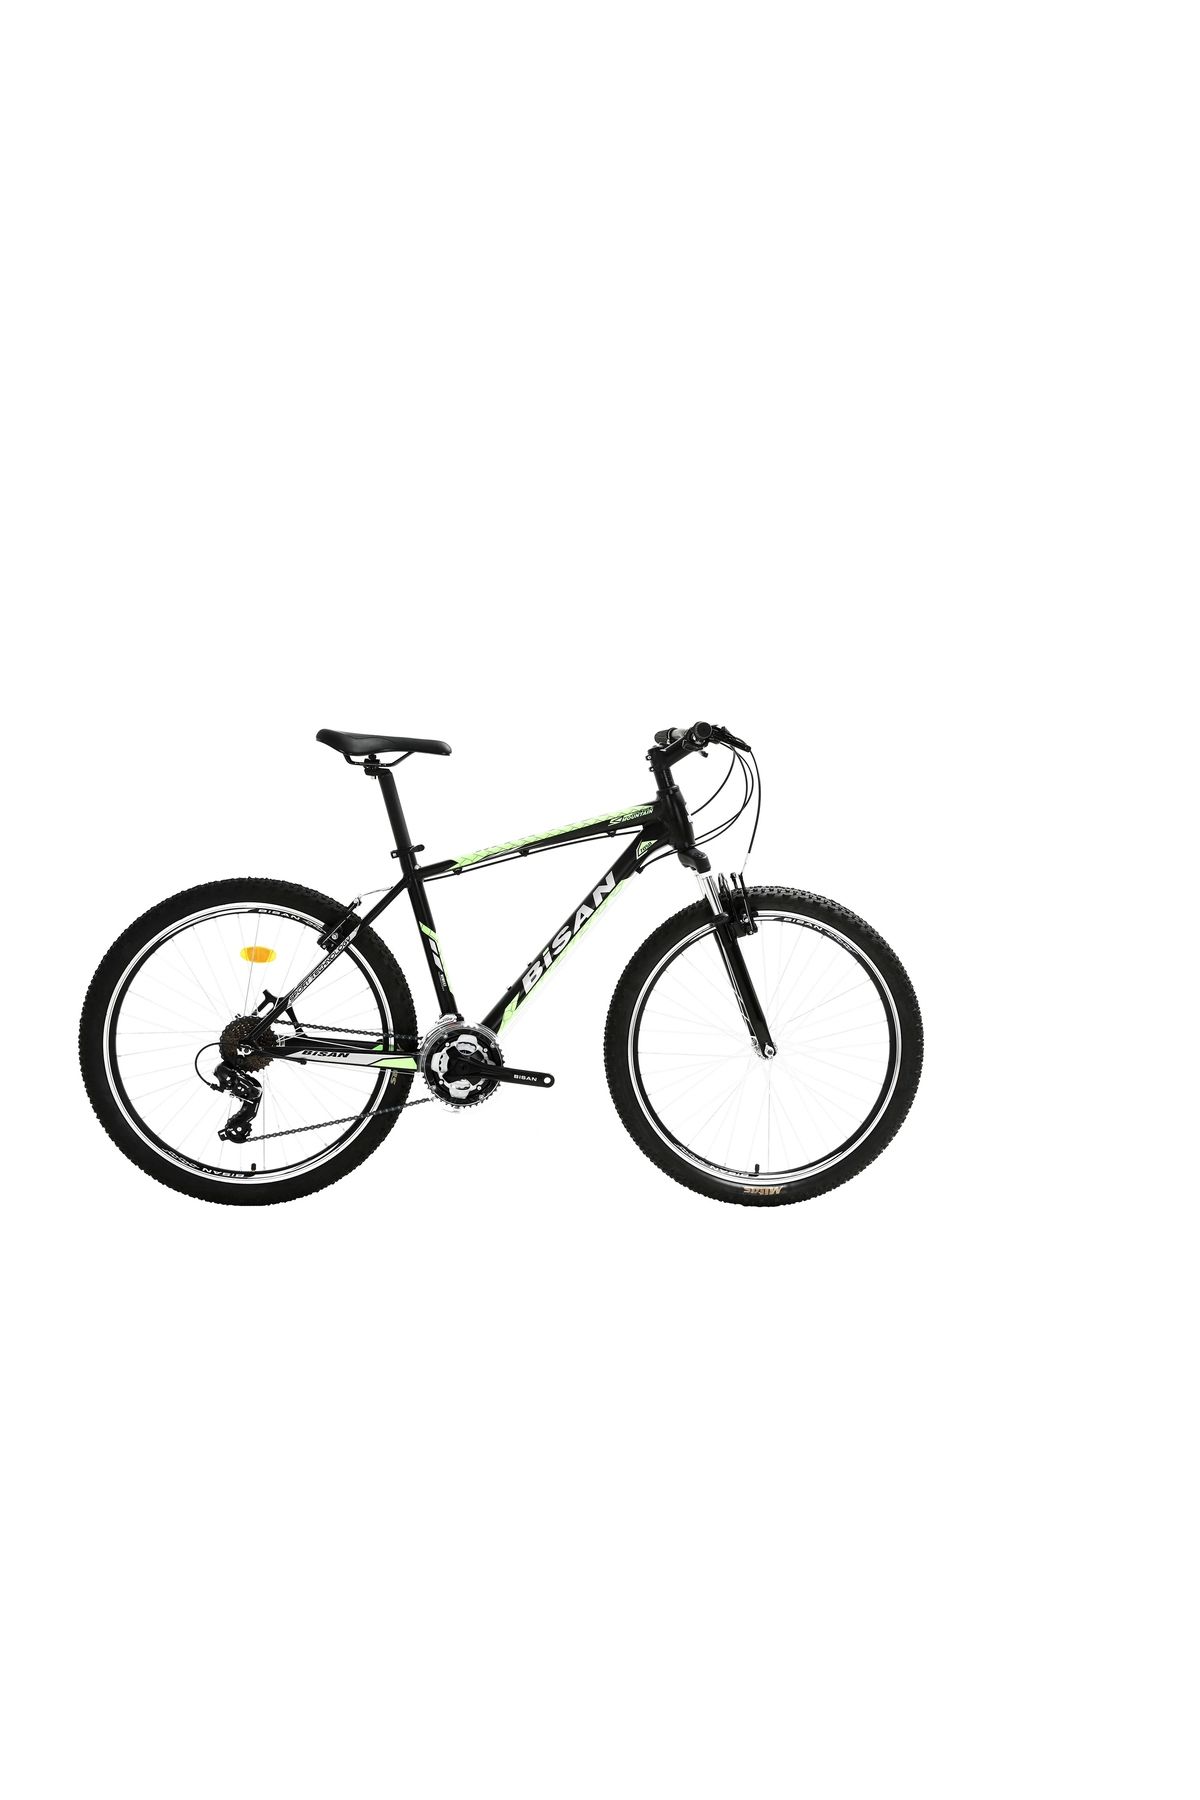 Bisan Mtx 7050 V Fren 21 Vites 27,5 Jant Dağ Bisikleti Siyah Yeşil 19 Kadro